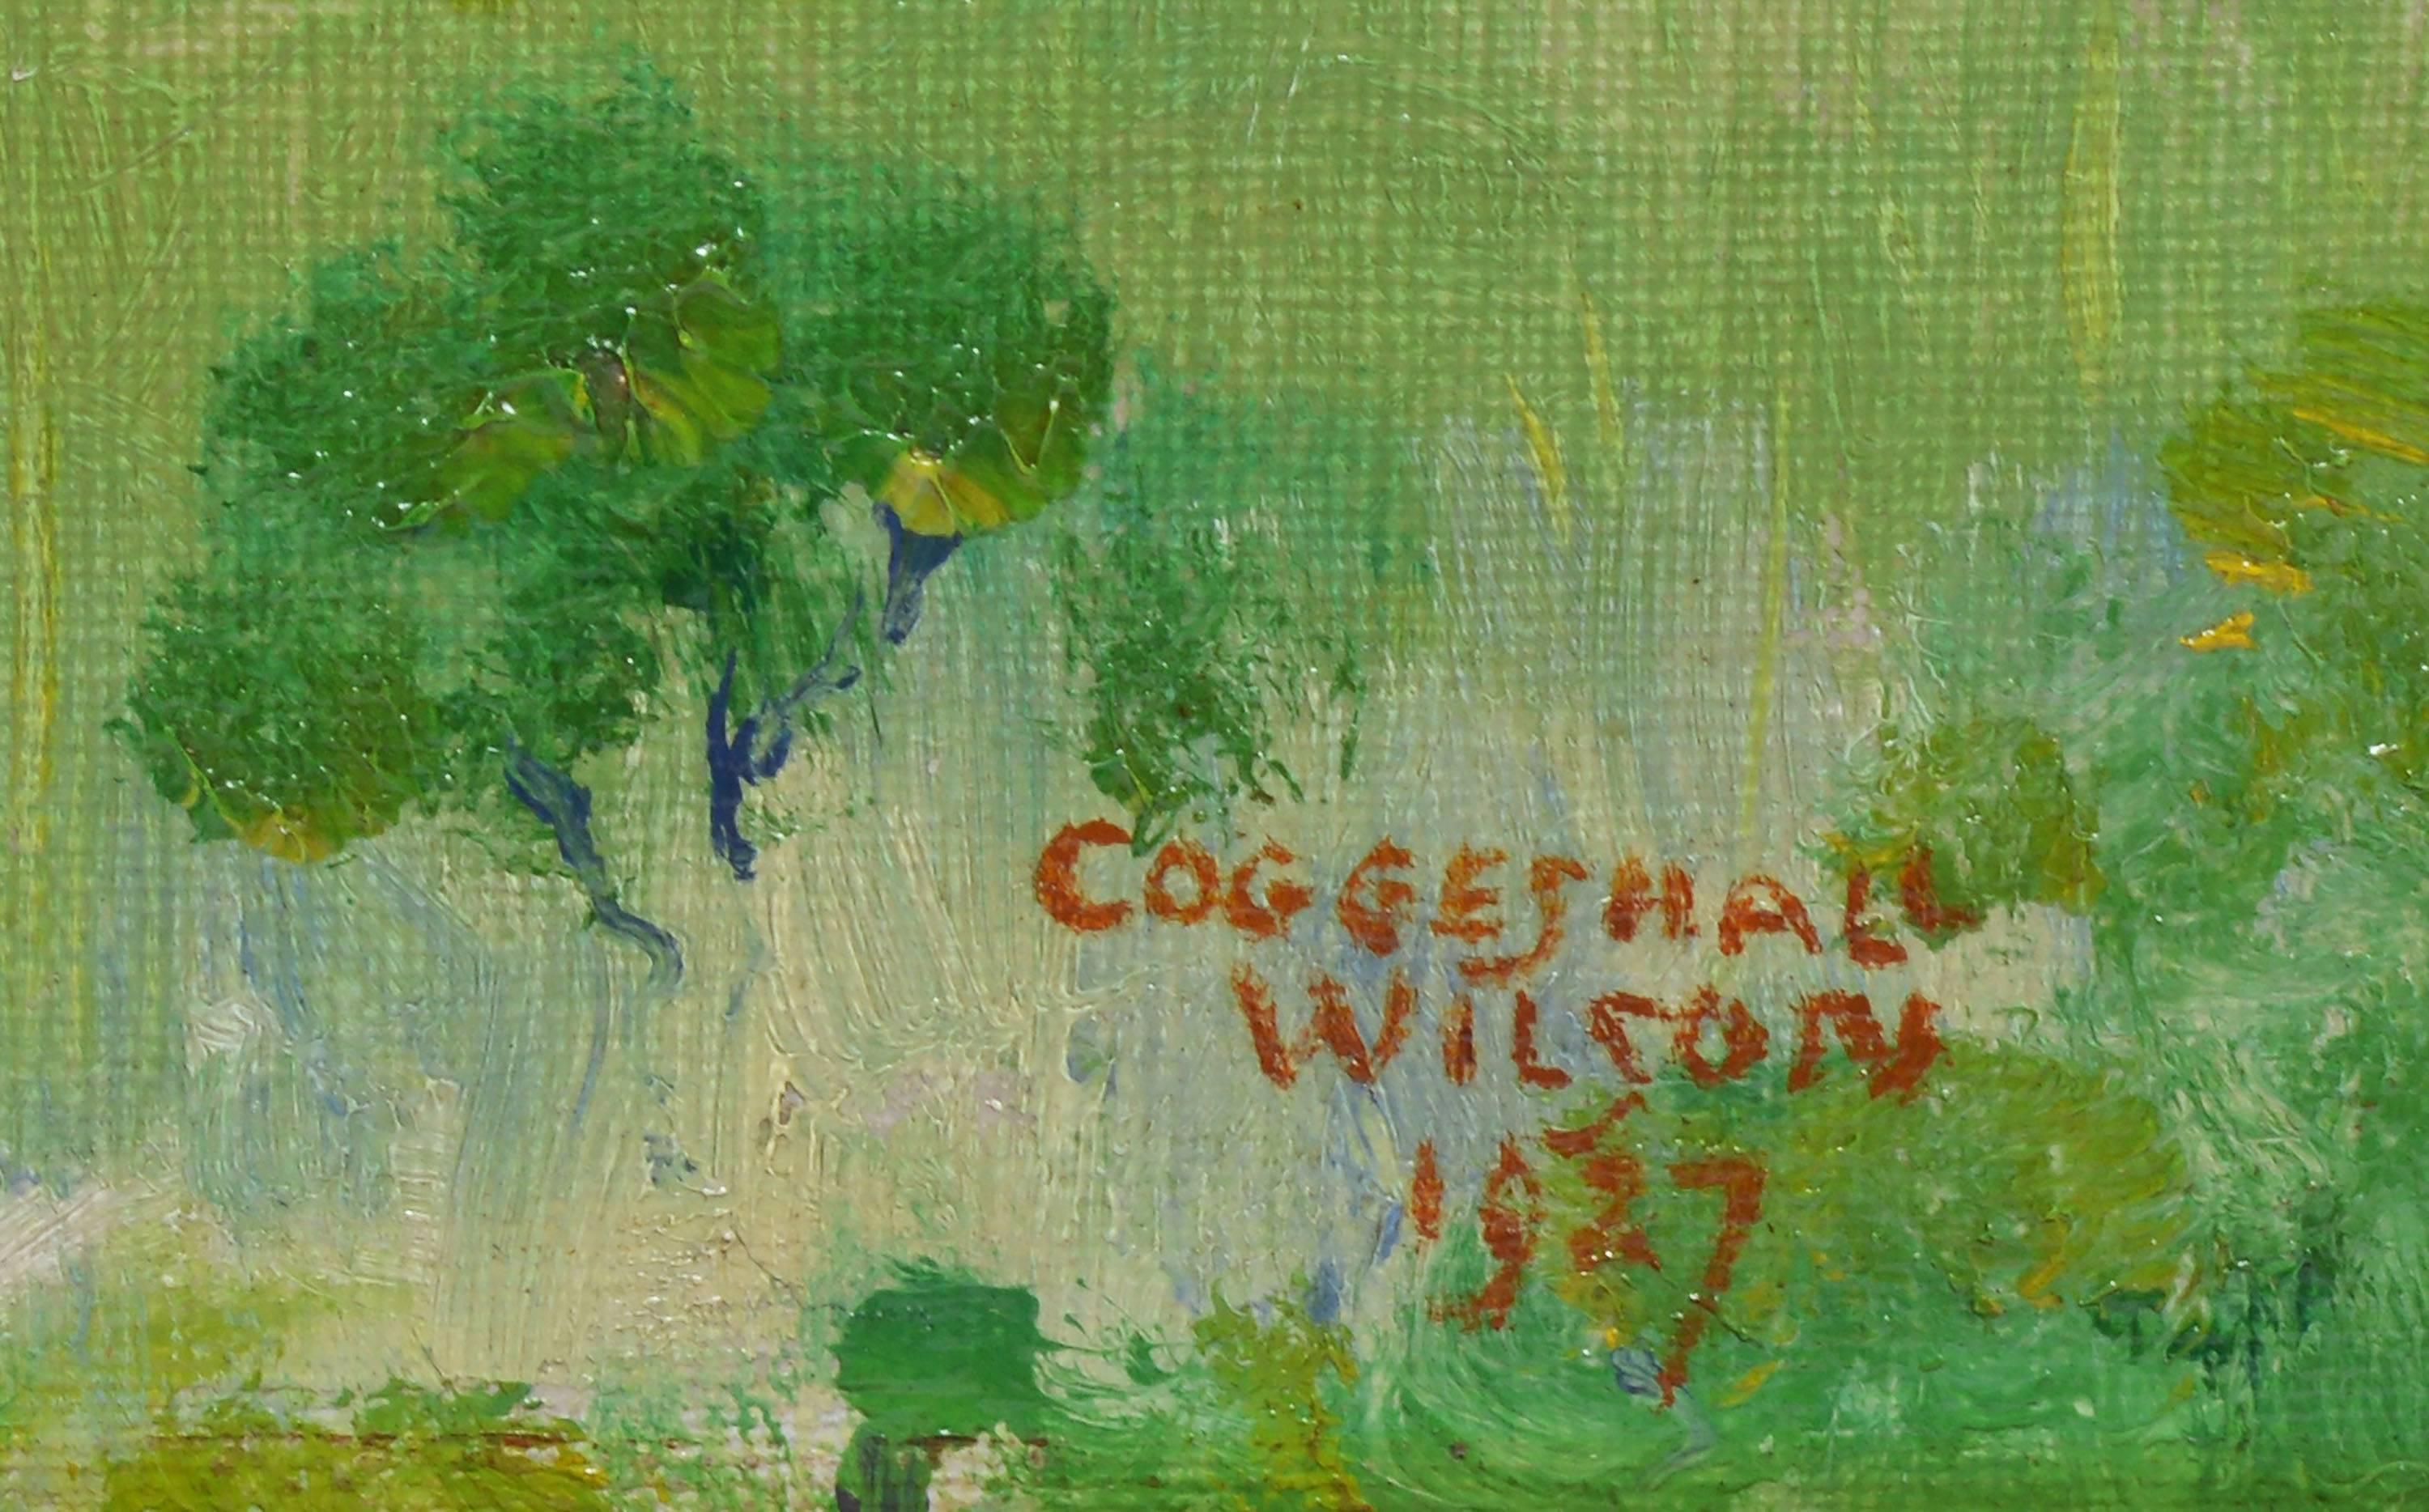 Küstenansicht von Coggeshall Wilson 2